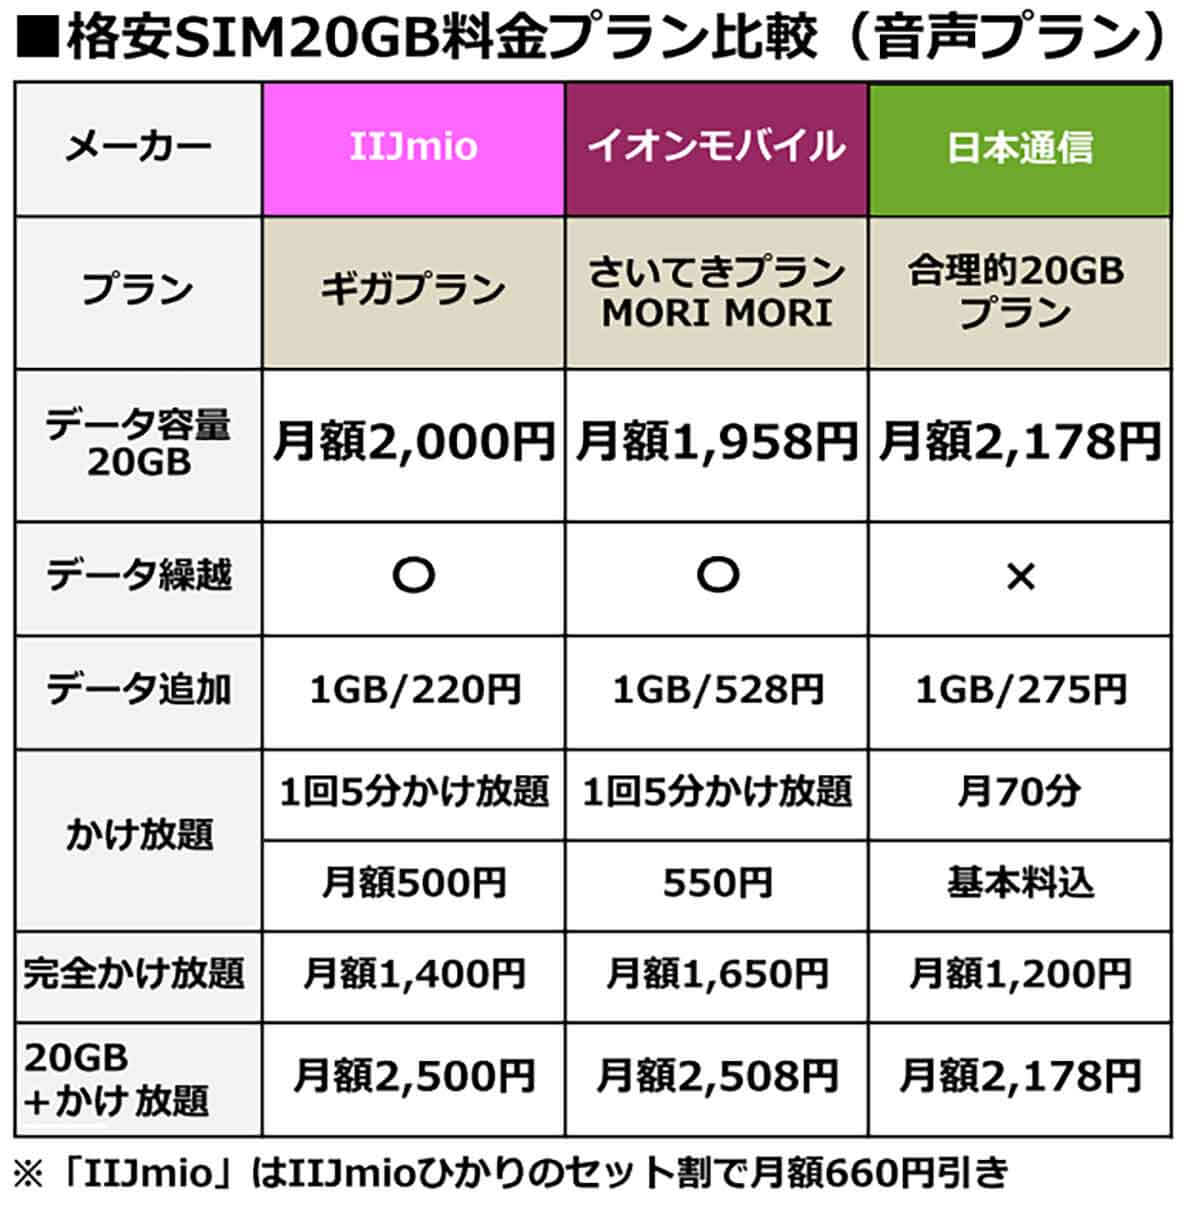 IIJmio、イオンモバイル、日本通信の格安SIM20GB料金プラン比較（音声プラン）